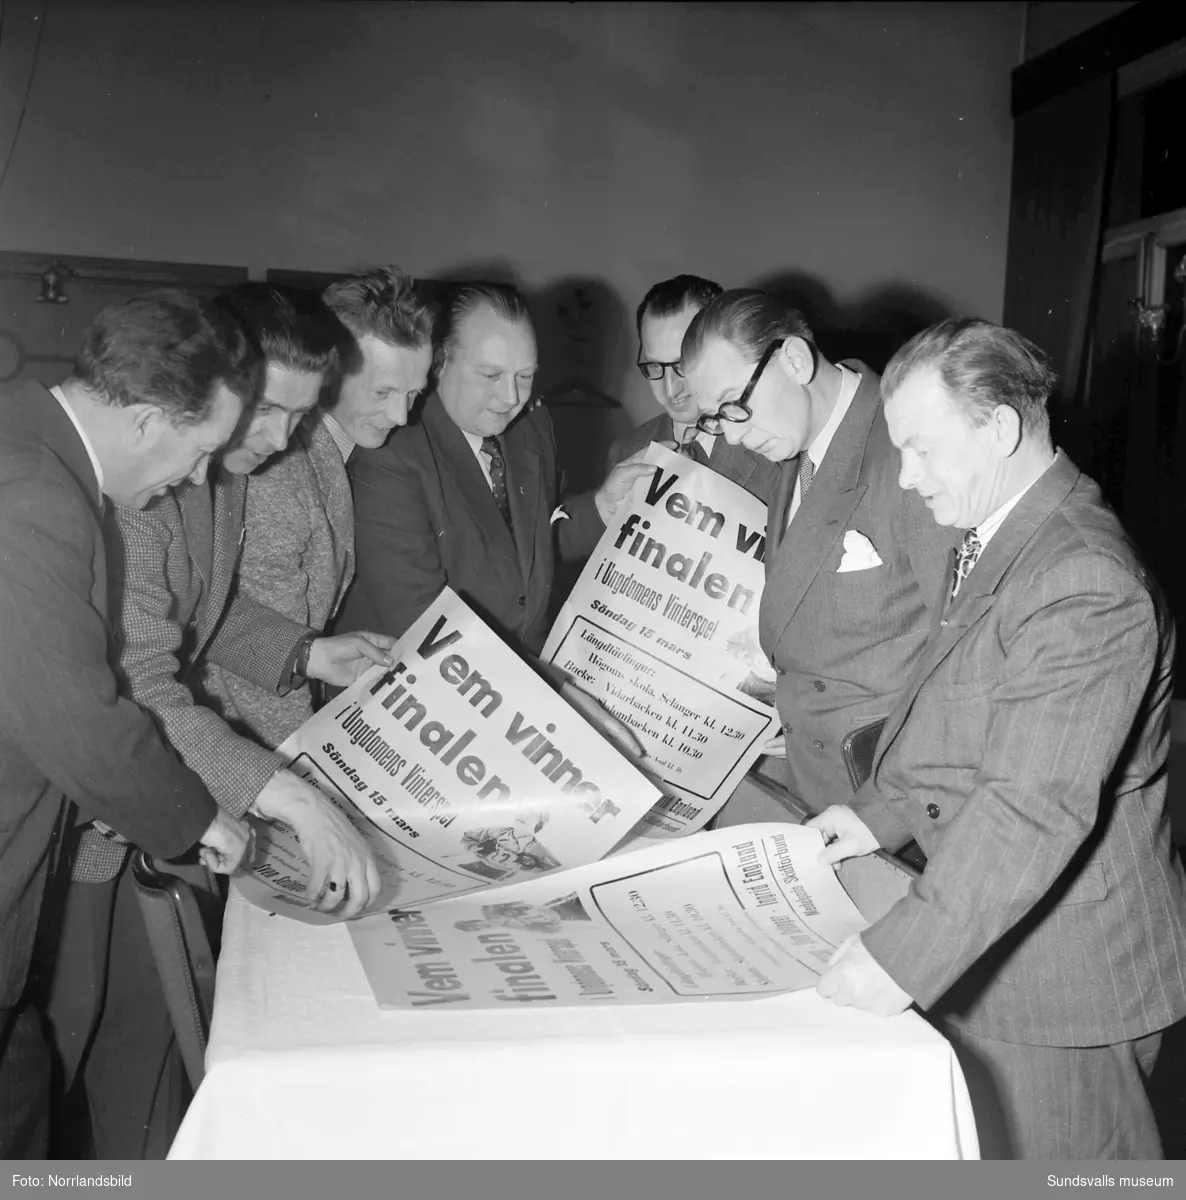 Medelpads skidförbunds representanter studerar löpsedlar inför finalen i Ungdomens vinterspel 1953.